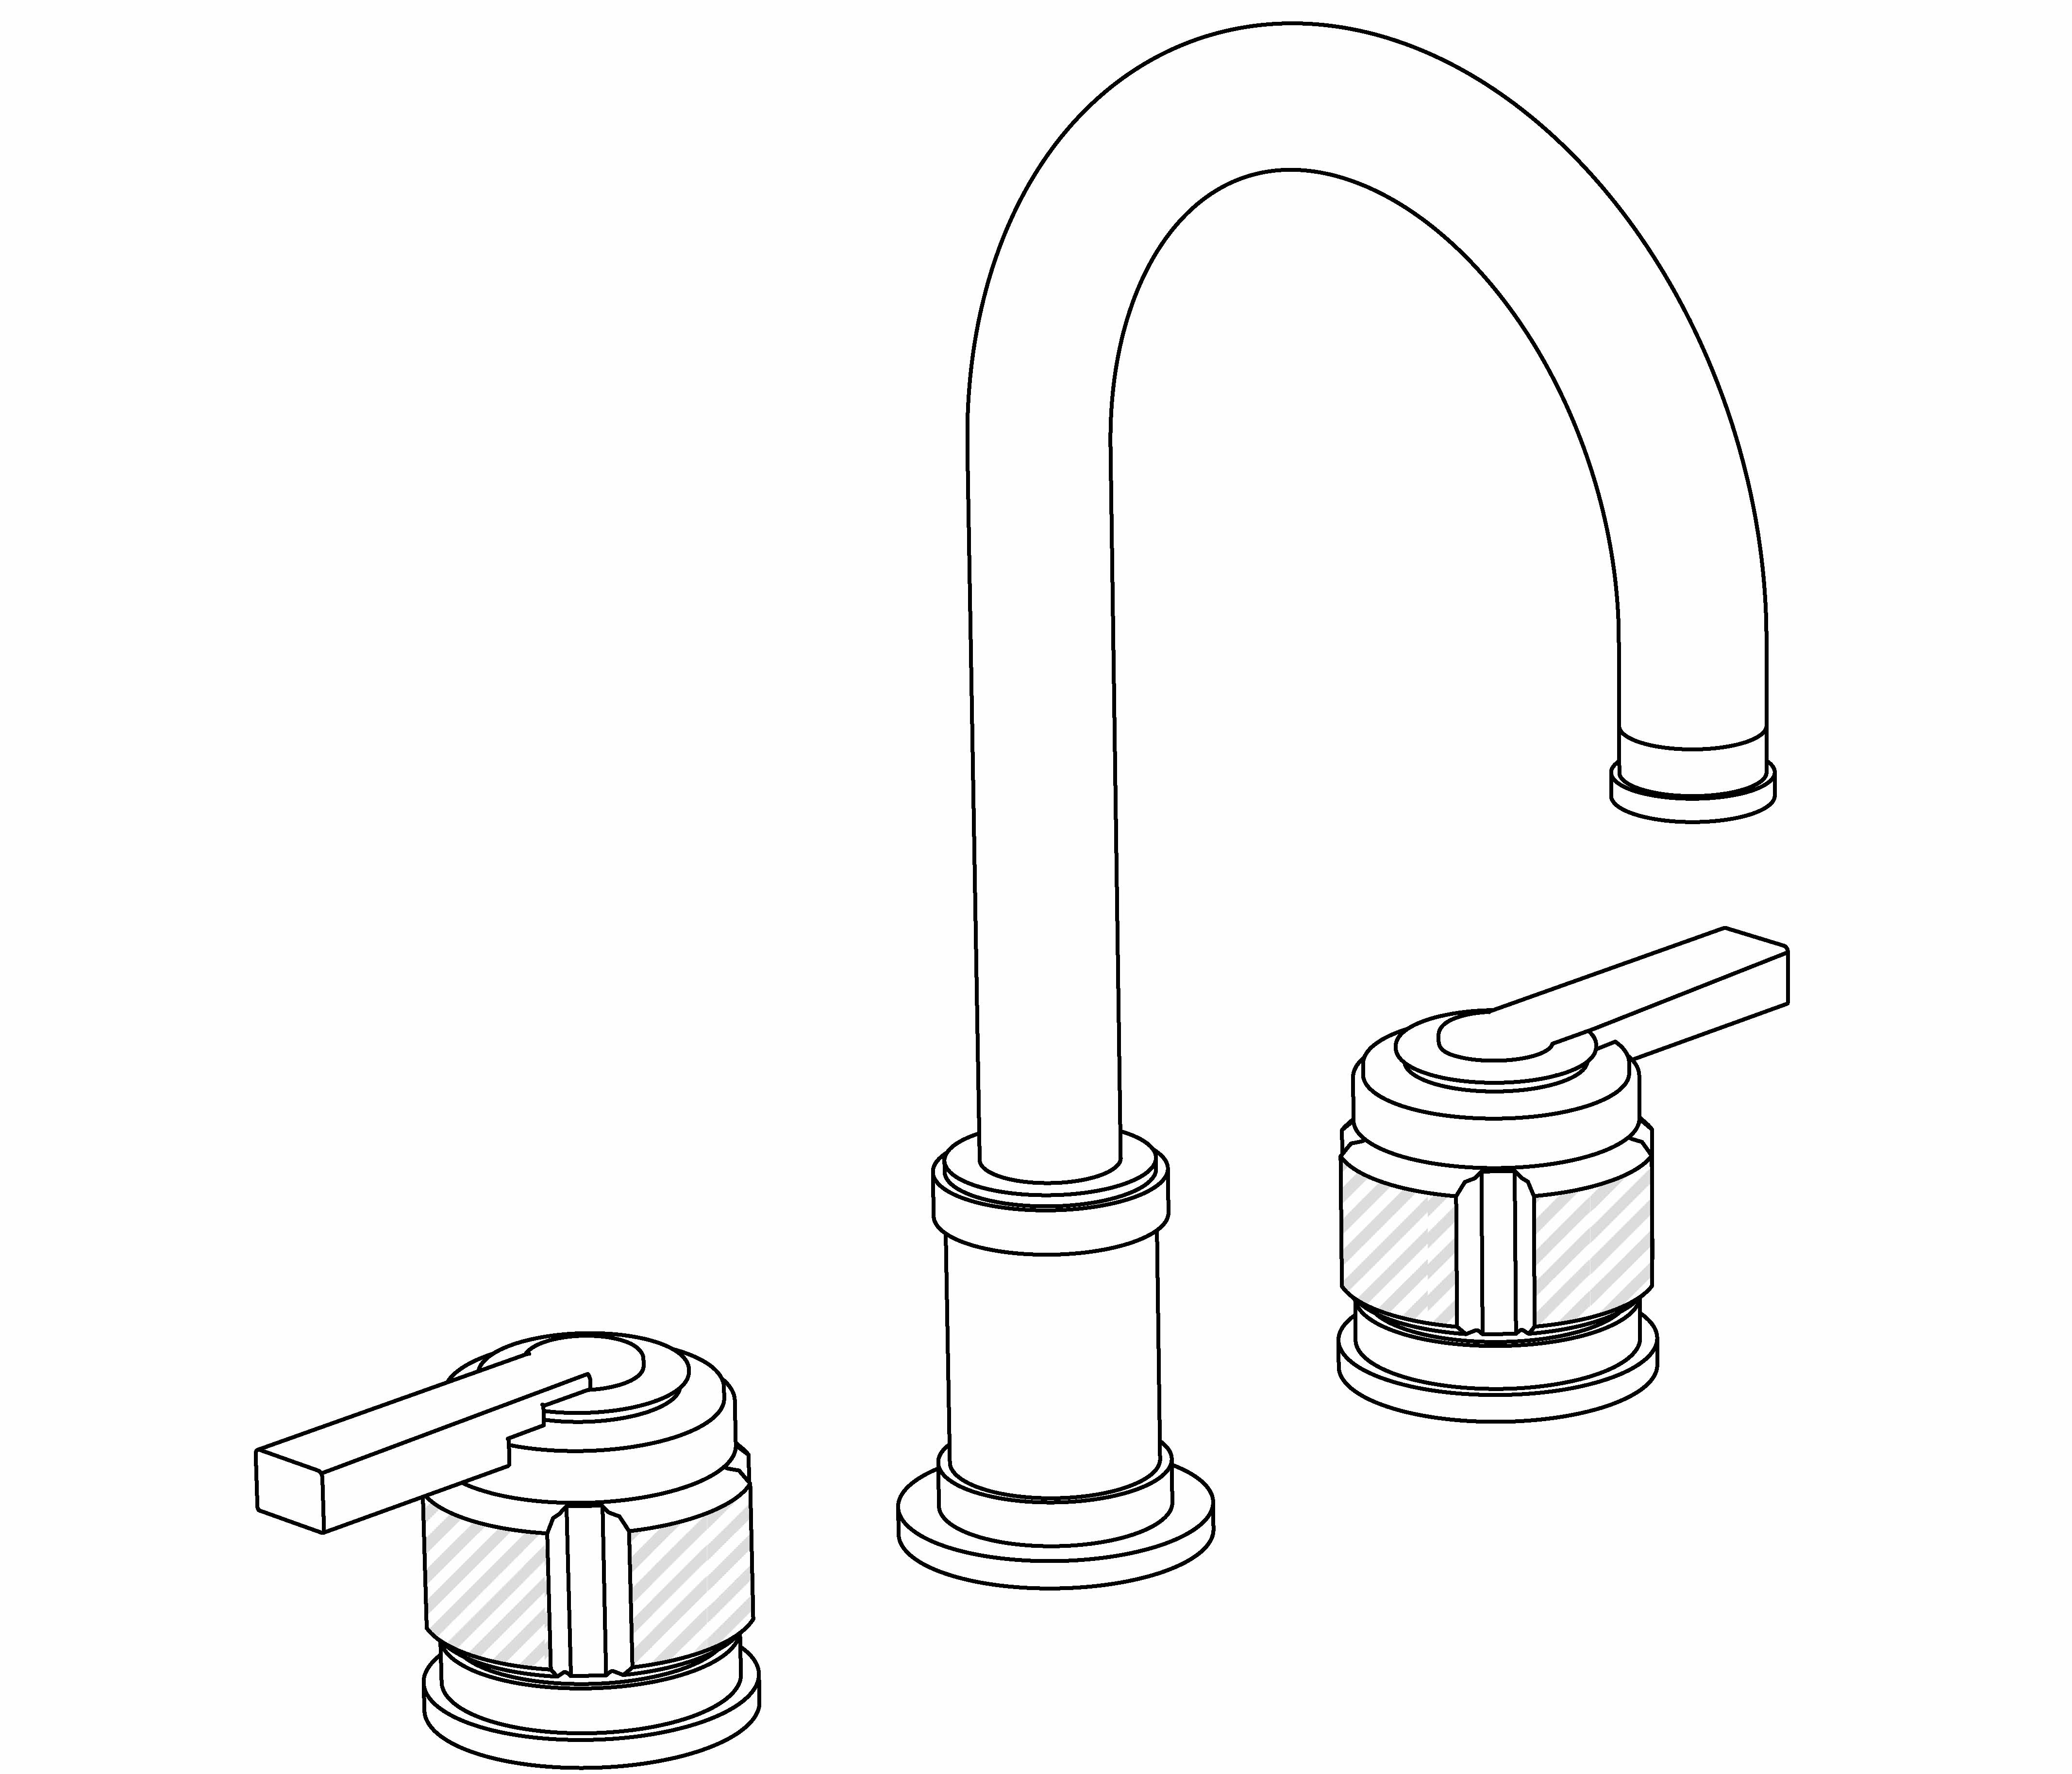 S87-1302 3-hole basin mixer